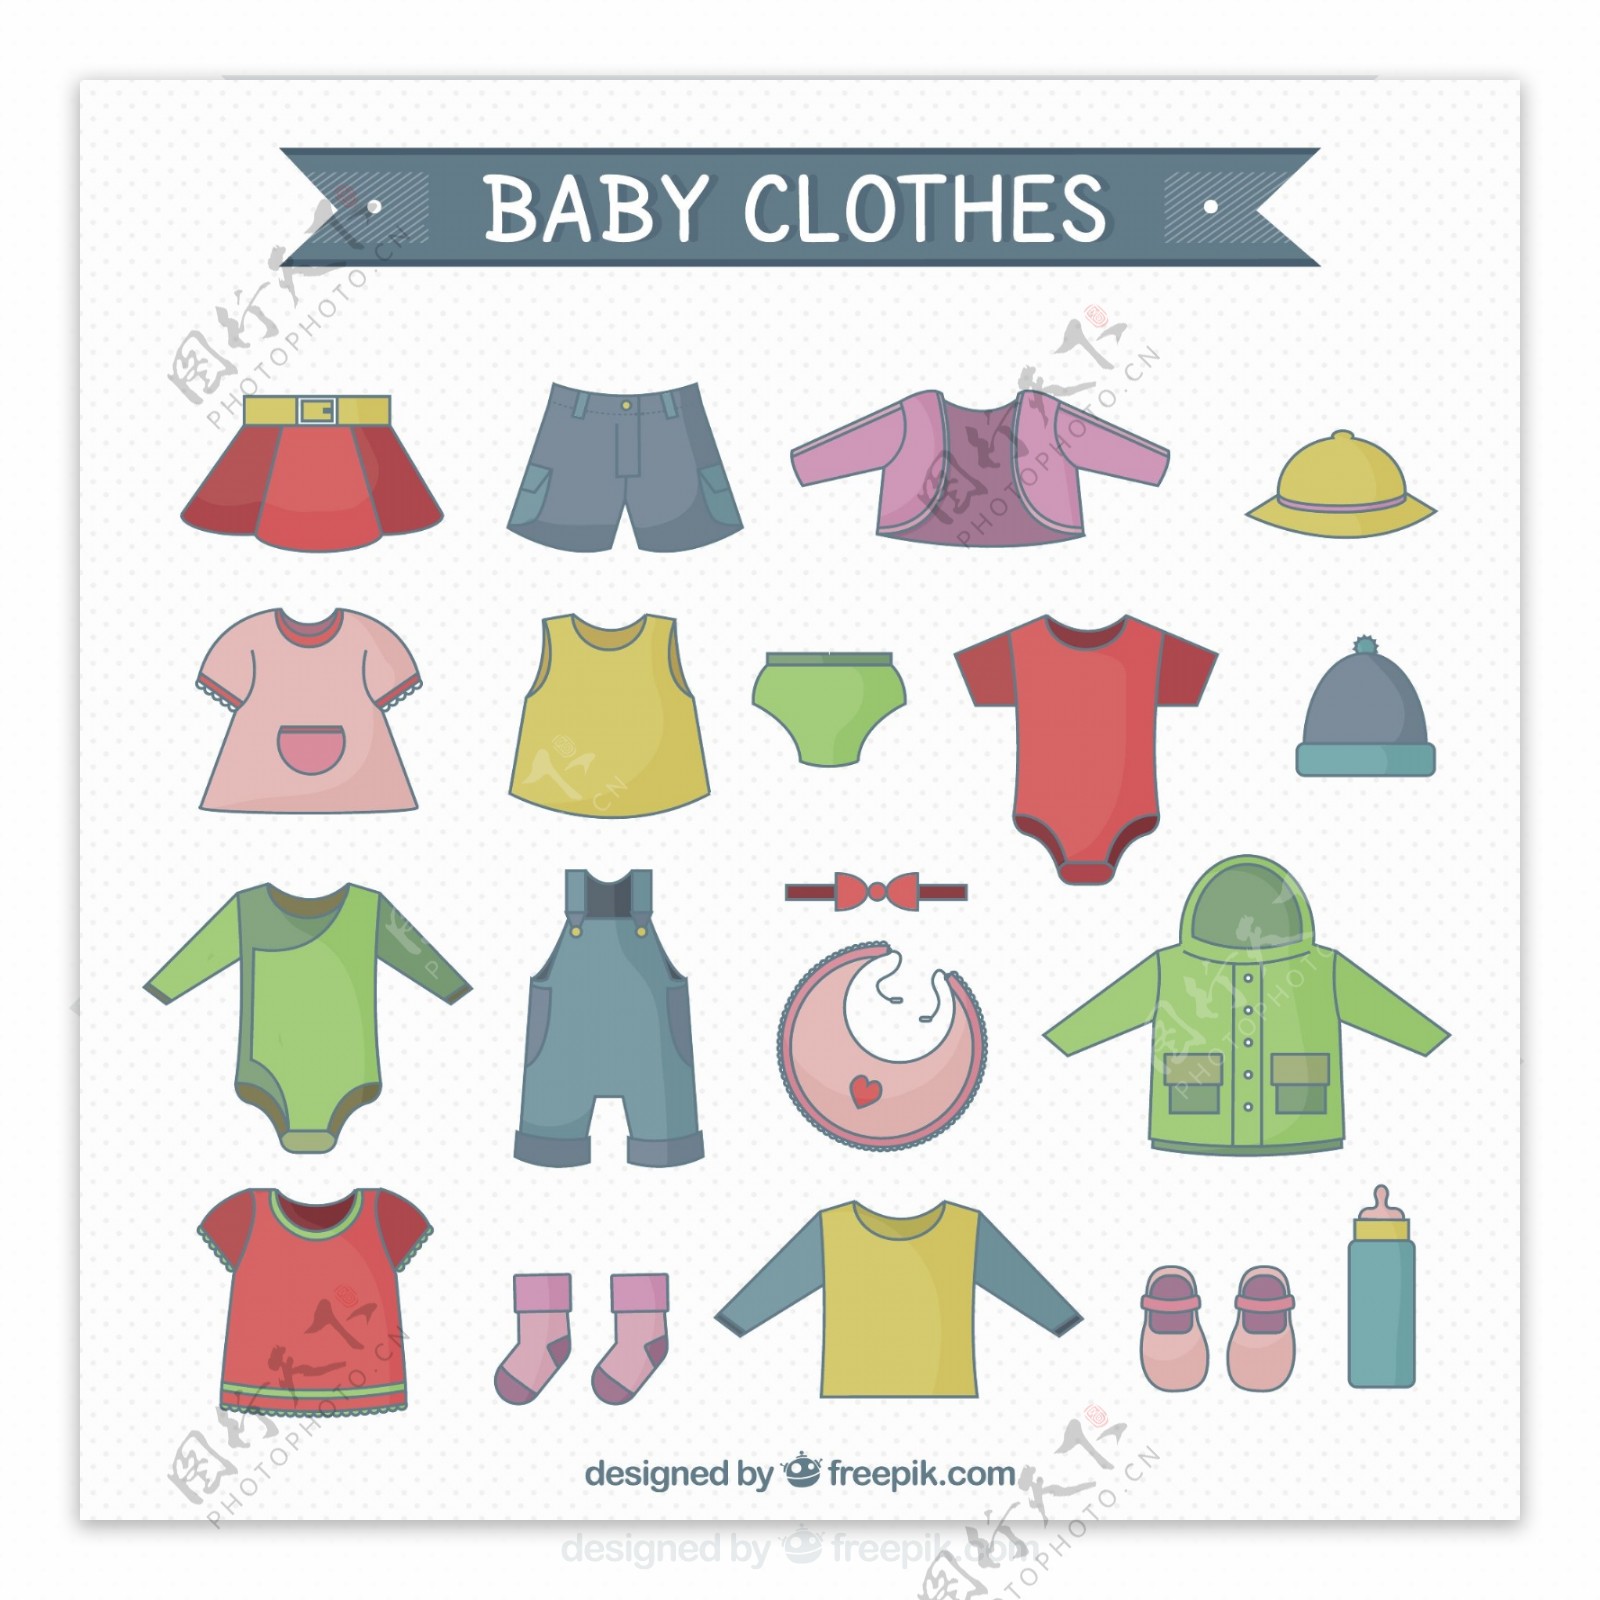 彩色婴儿服装收集